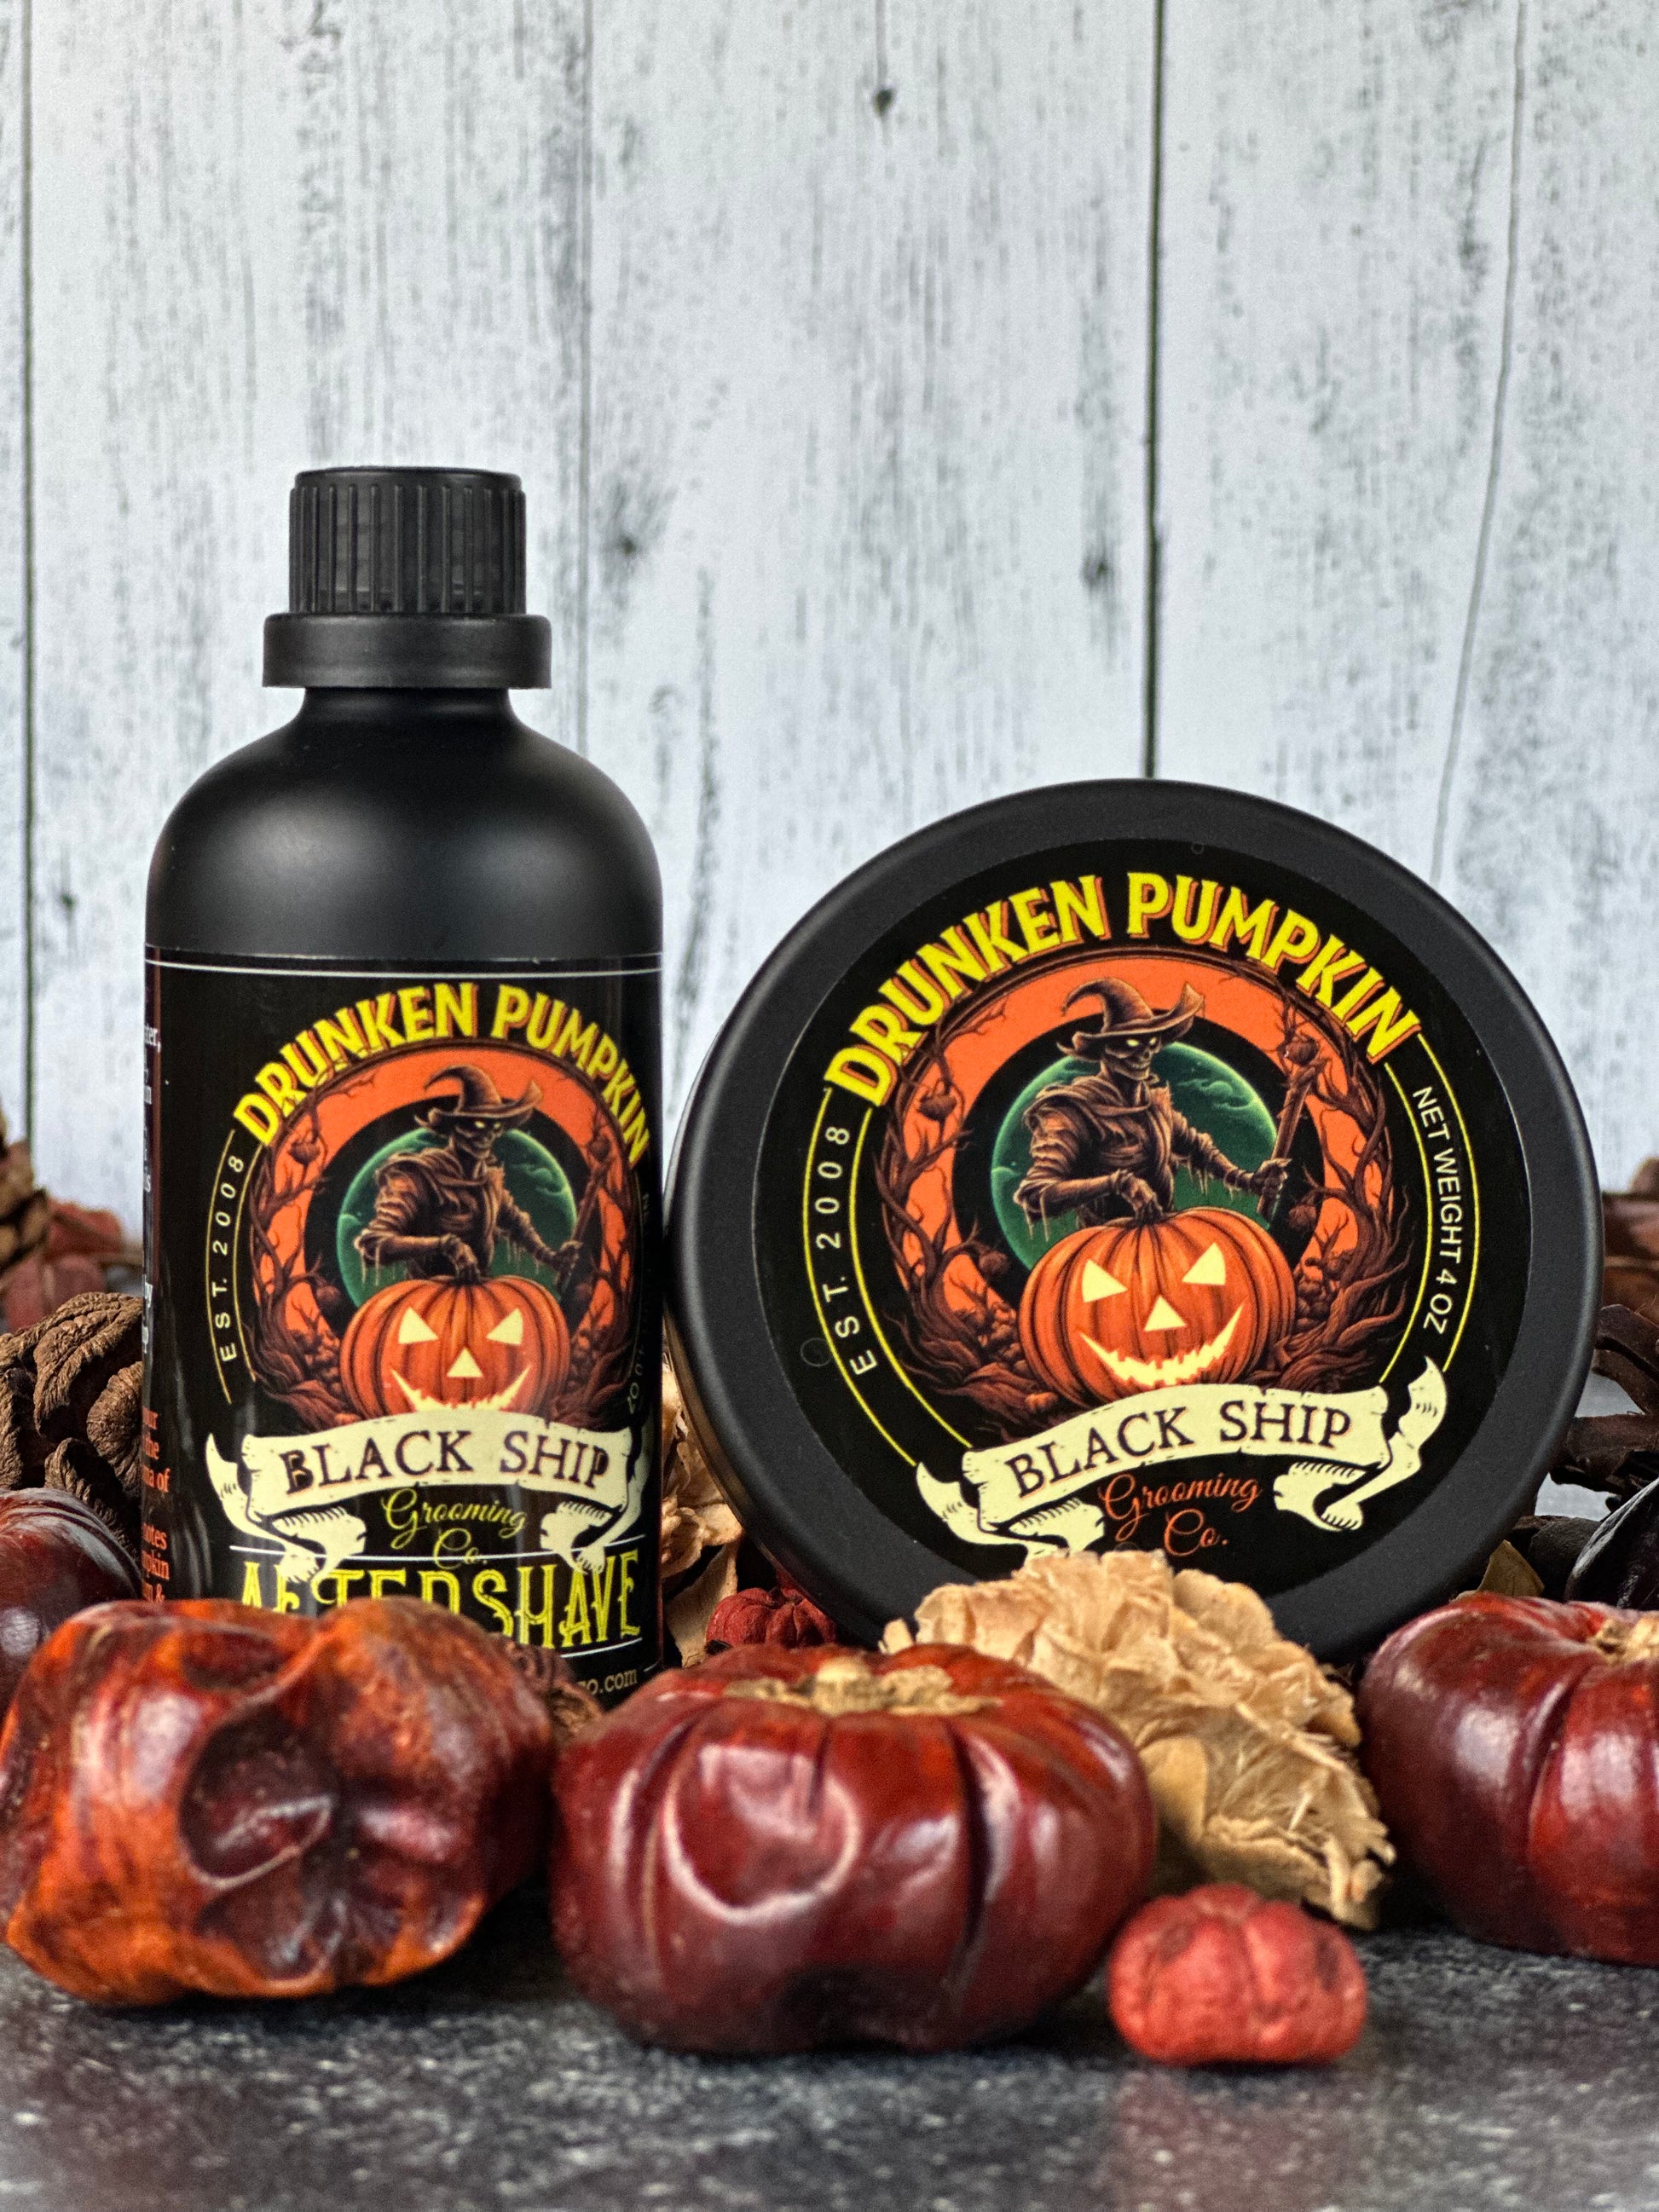 Drunken Pumpkin Limited edtion Aftershave | Black Ship grooming co. 